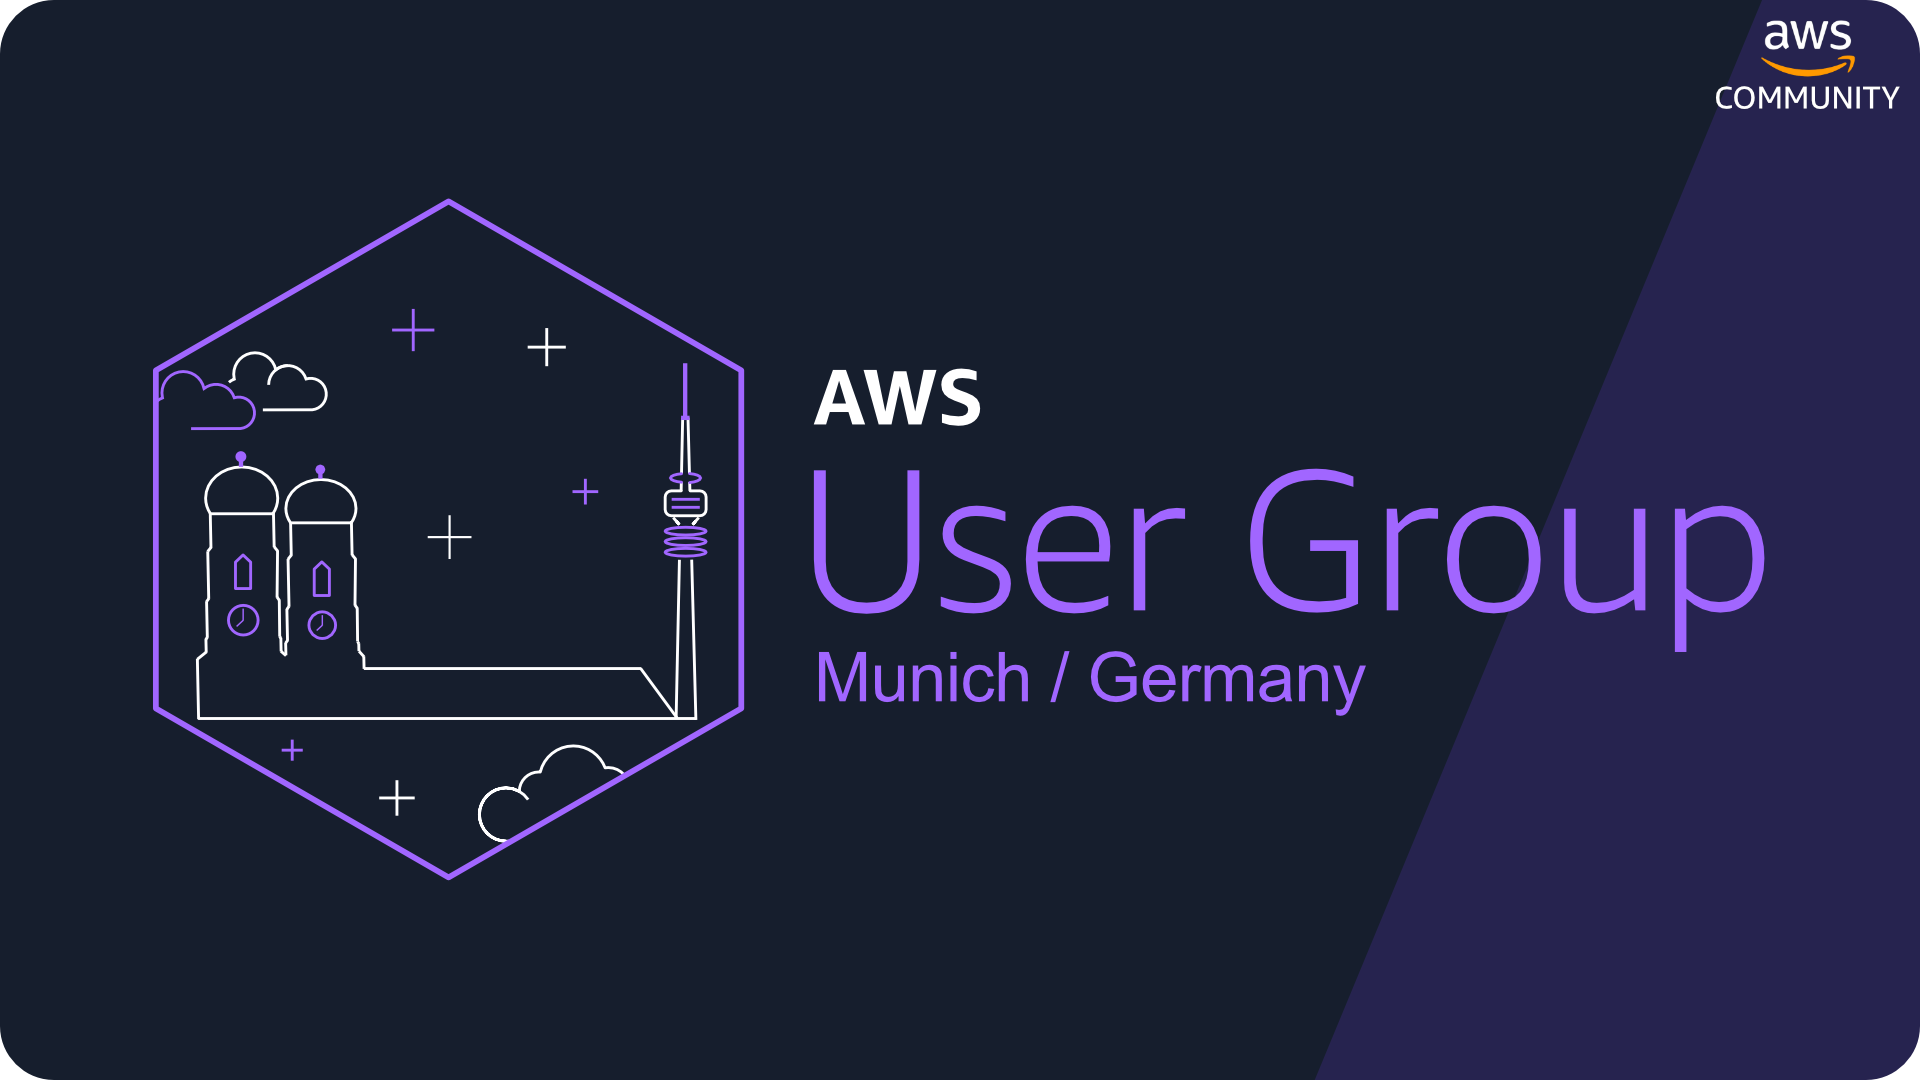 Wir hosten die nächste AWS User Group in München